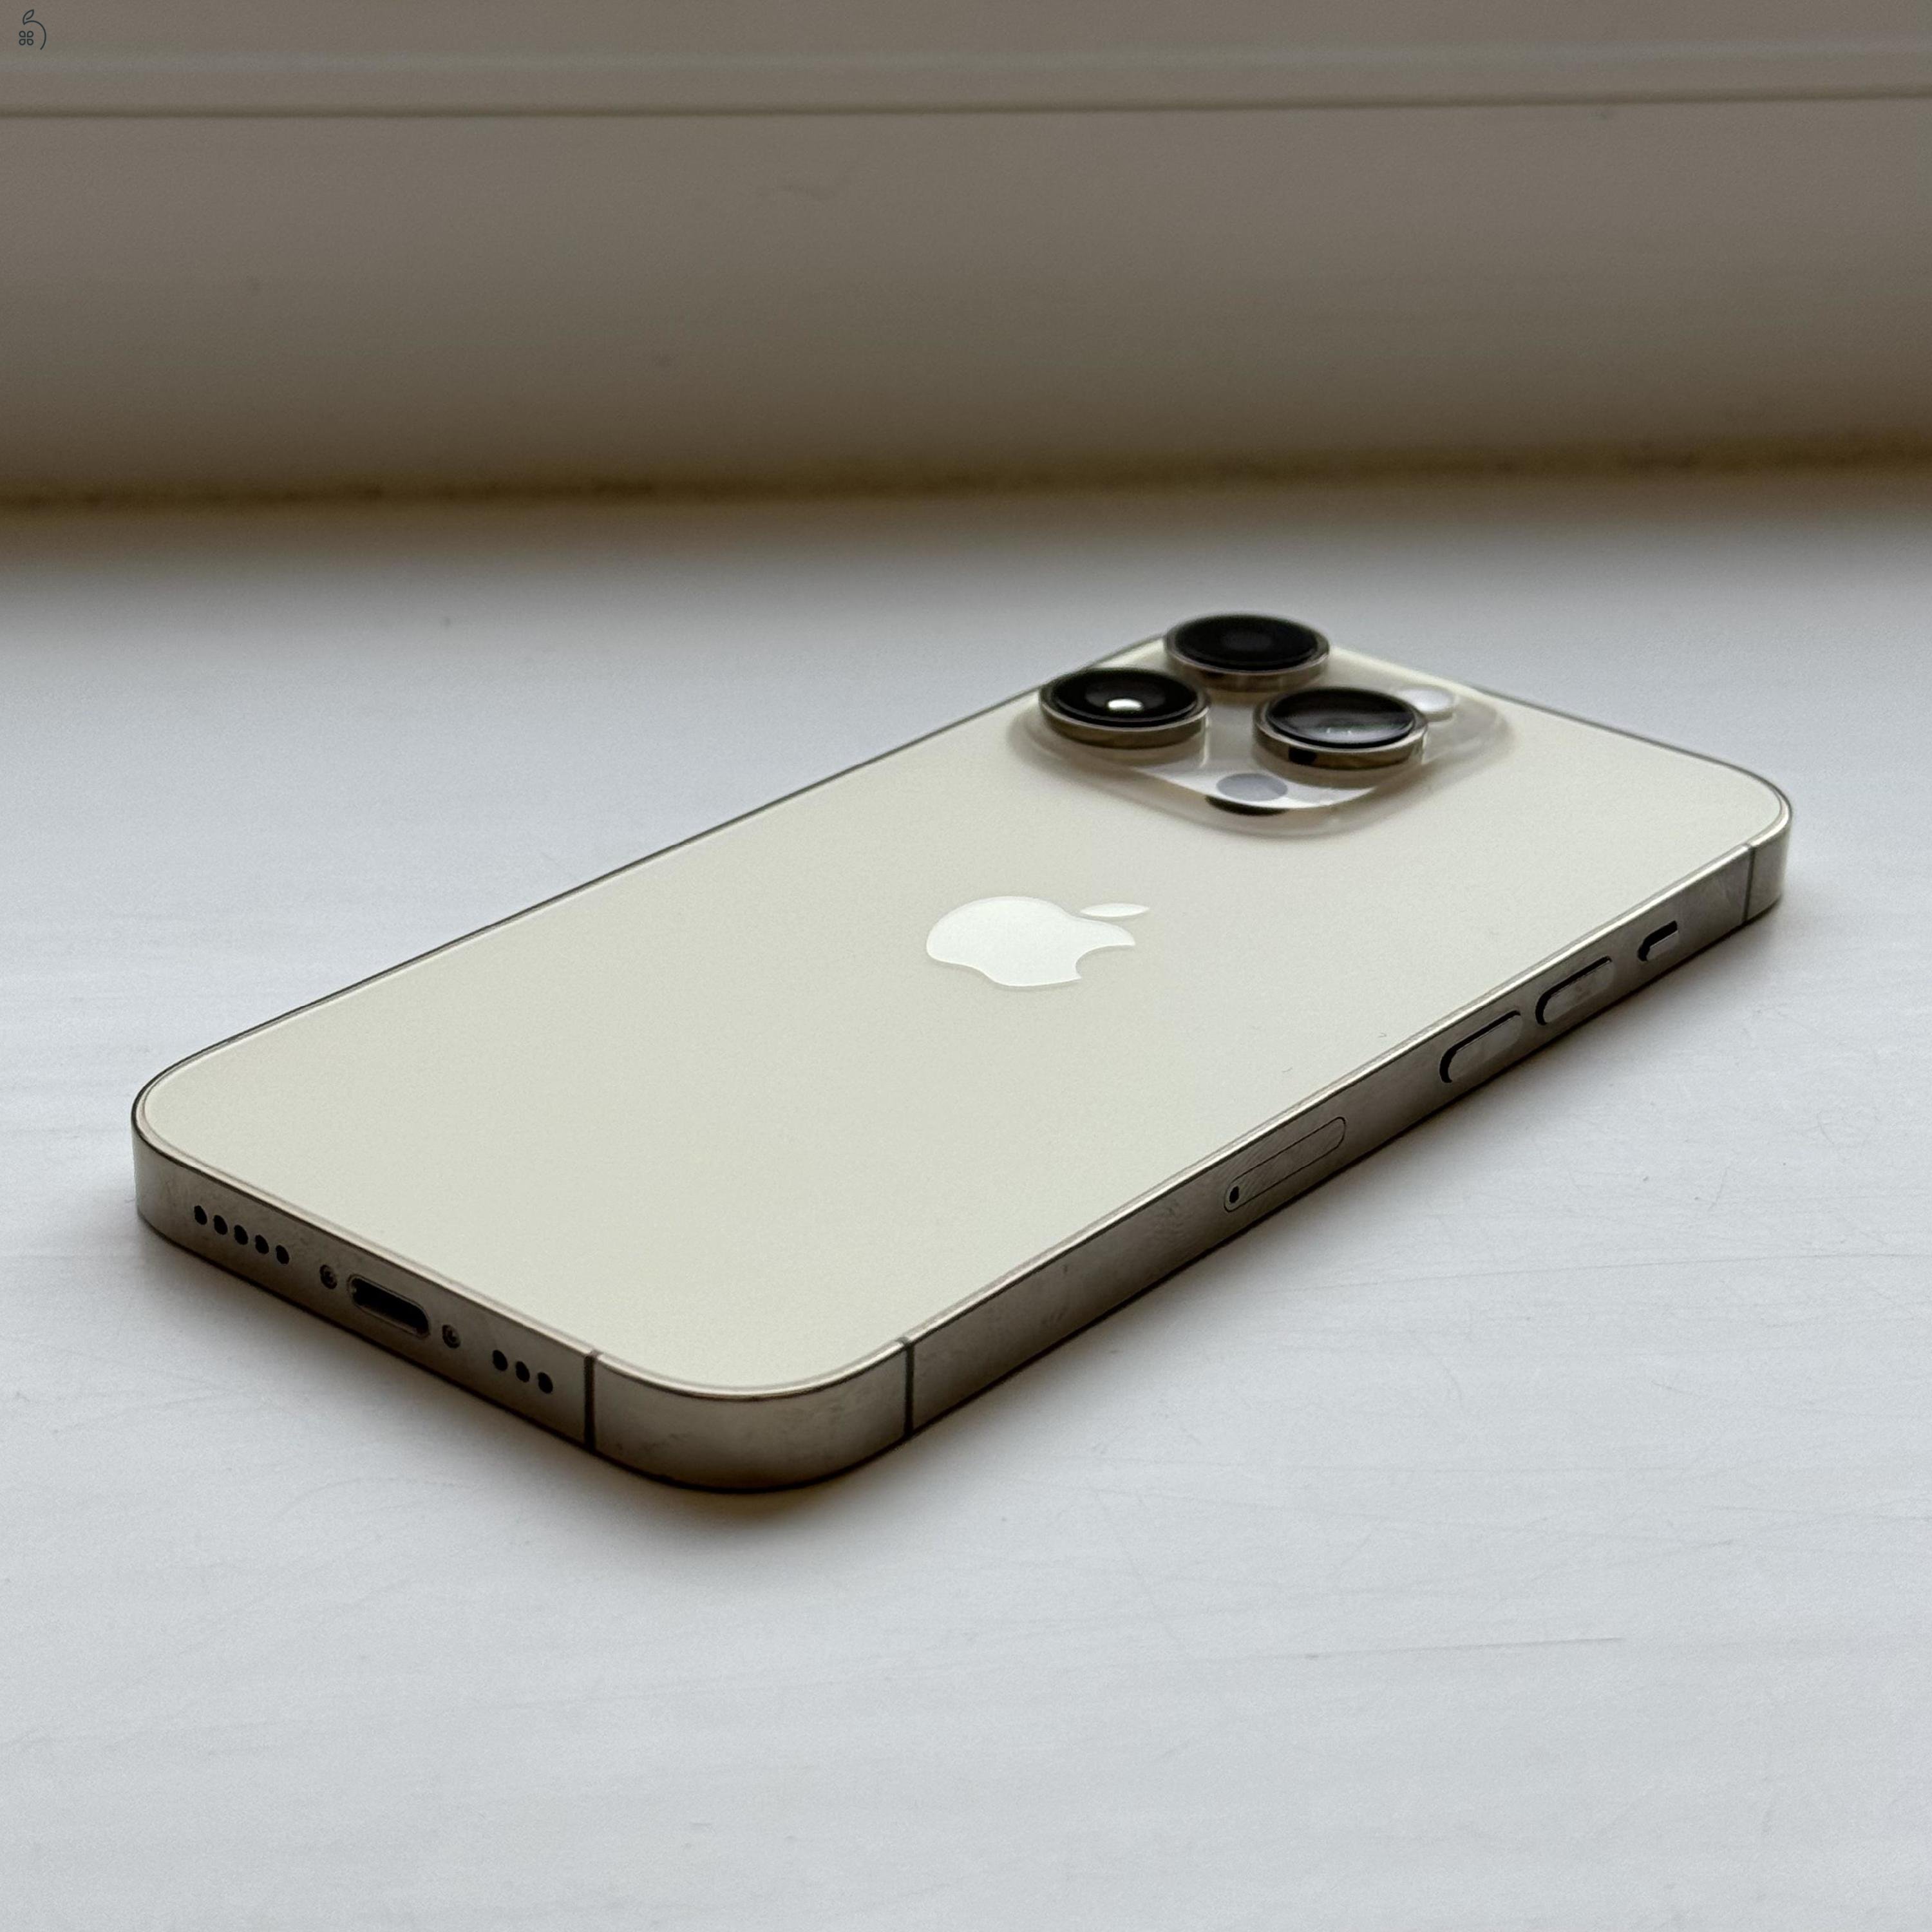 HIBÁTLAN iPhone 14 Pro 512GB Gold - 1 ÉV GARANCIA, Kártyfüggetlen, 92% Akkumulátor